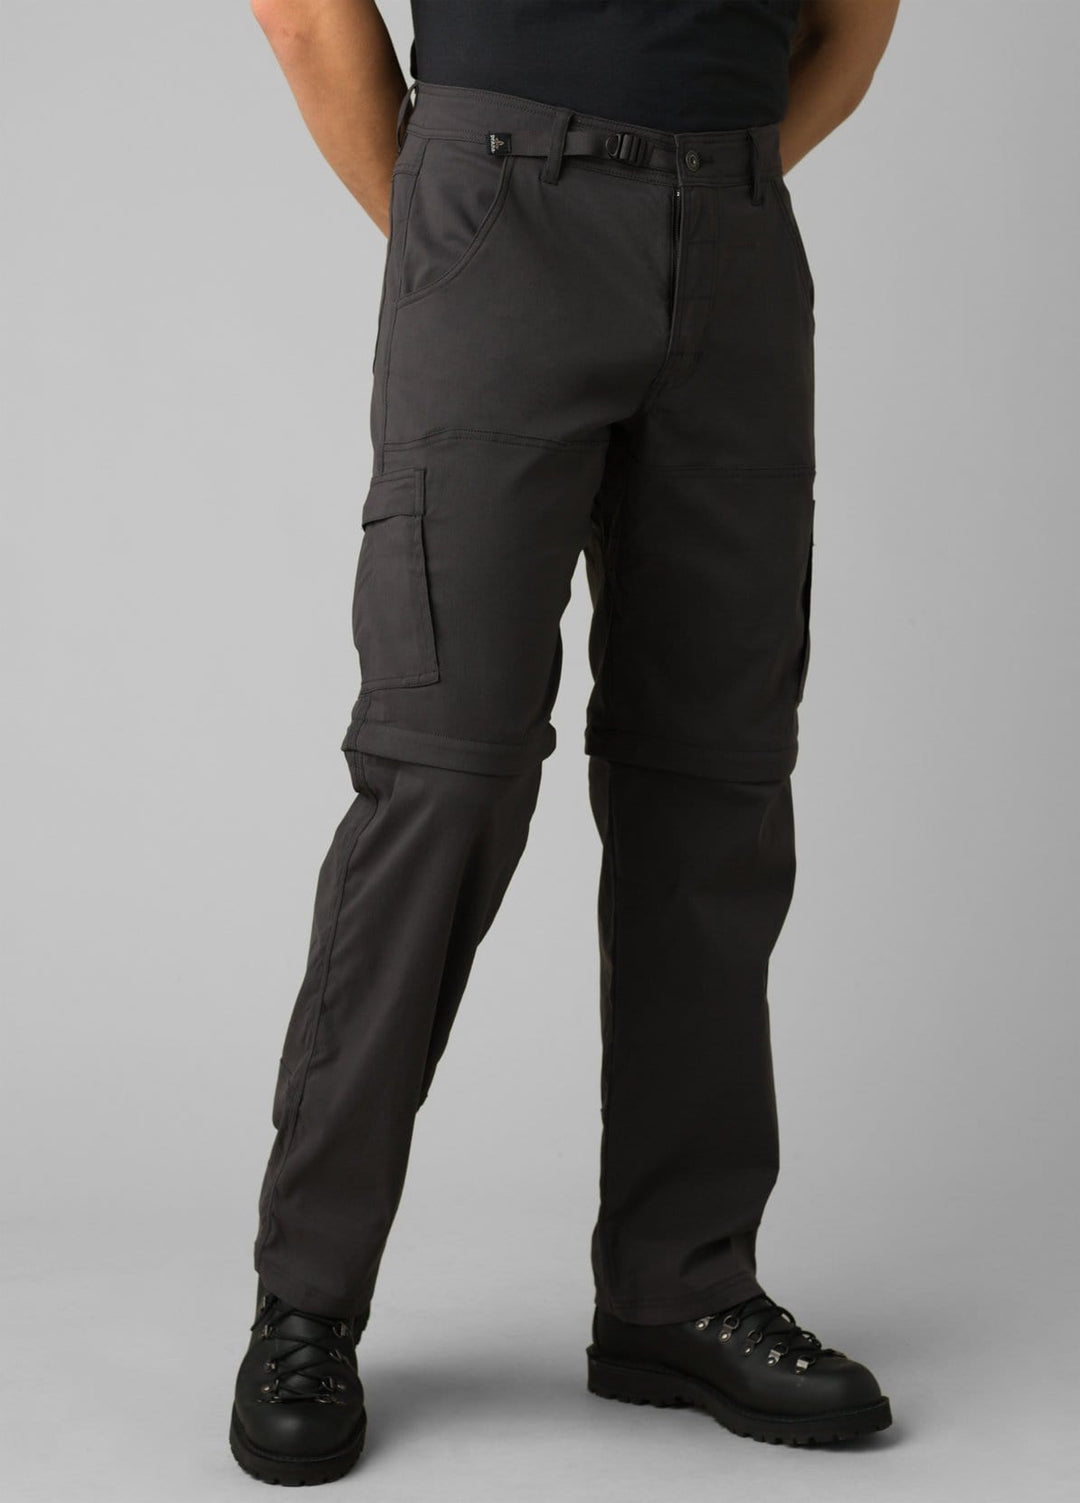 PRANA Men's Stretch Zion Slim Pant II 32 Inseam